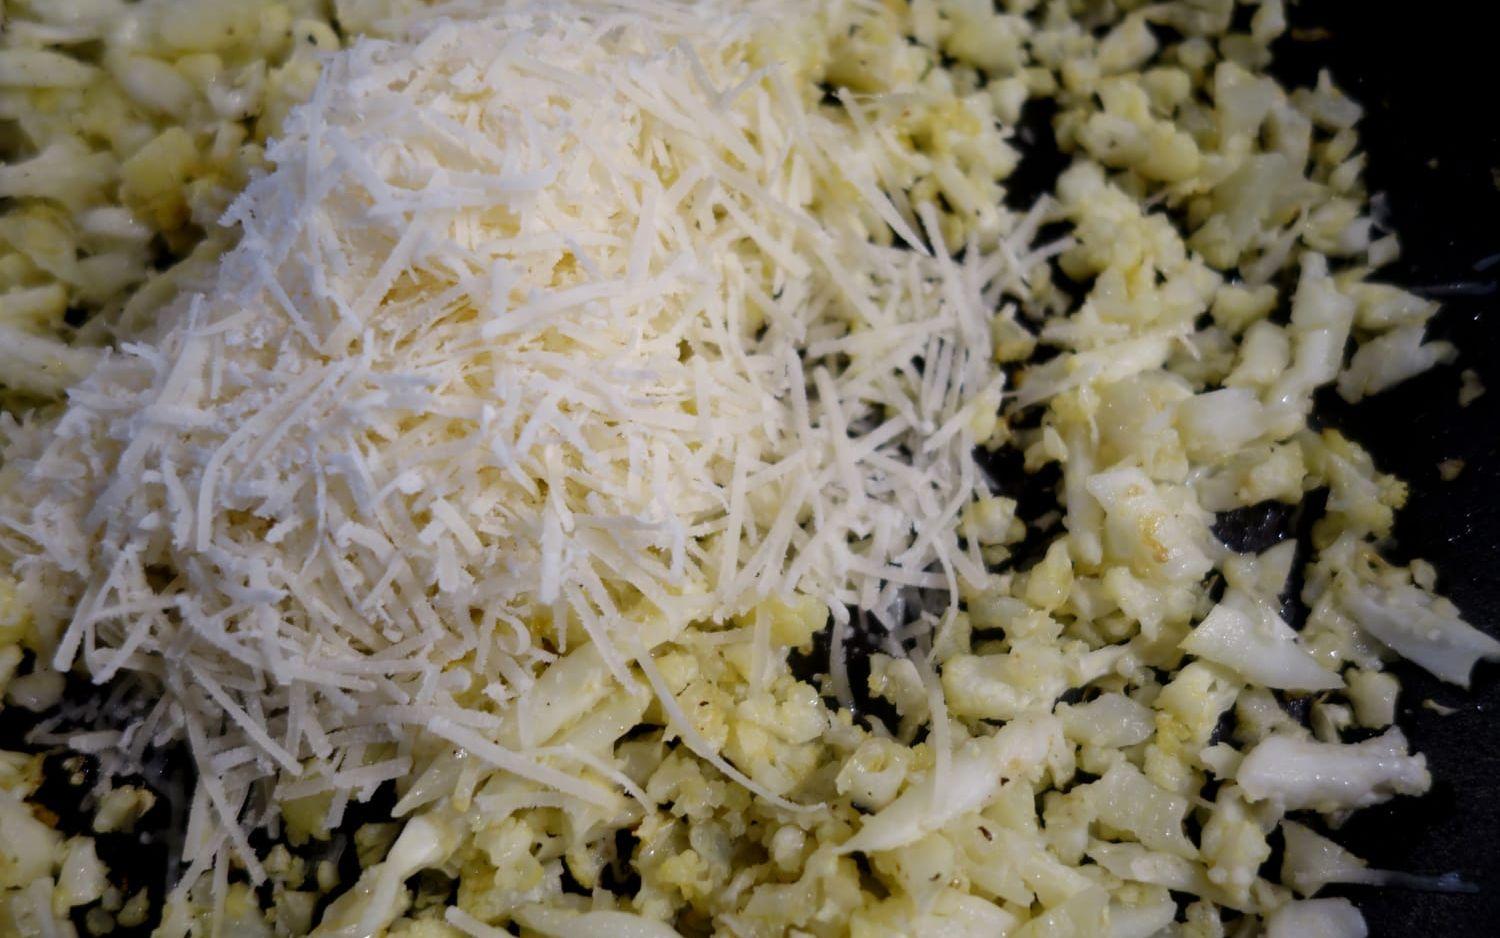 Mumsigt. Nyriven parmesanost blandas med det varma blomkålsriset.